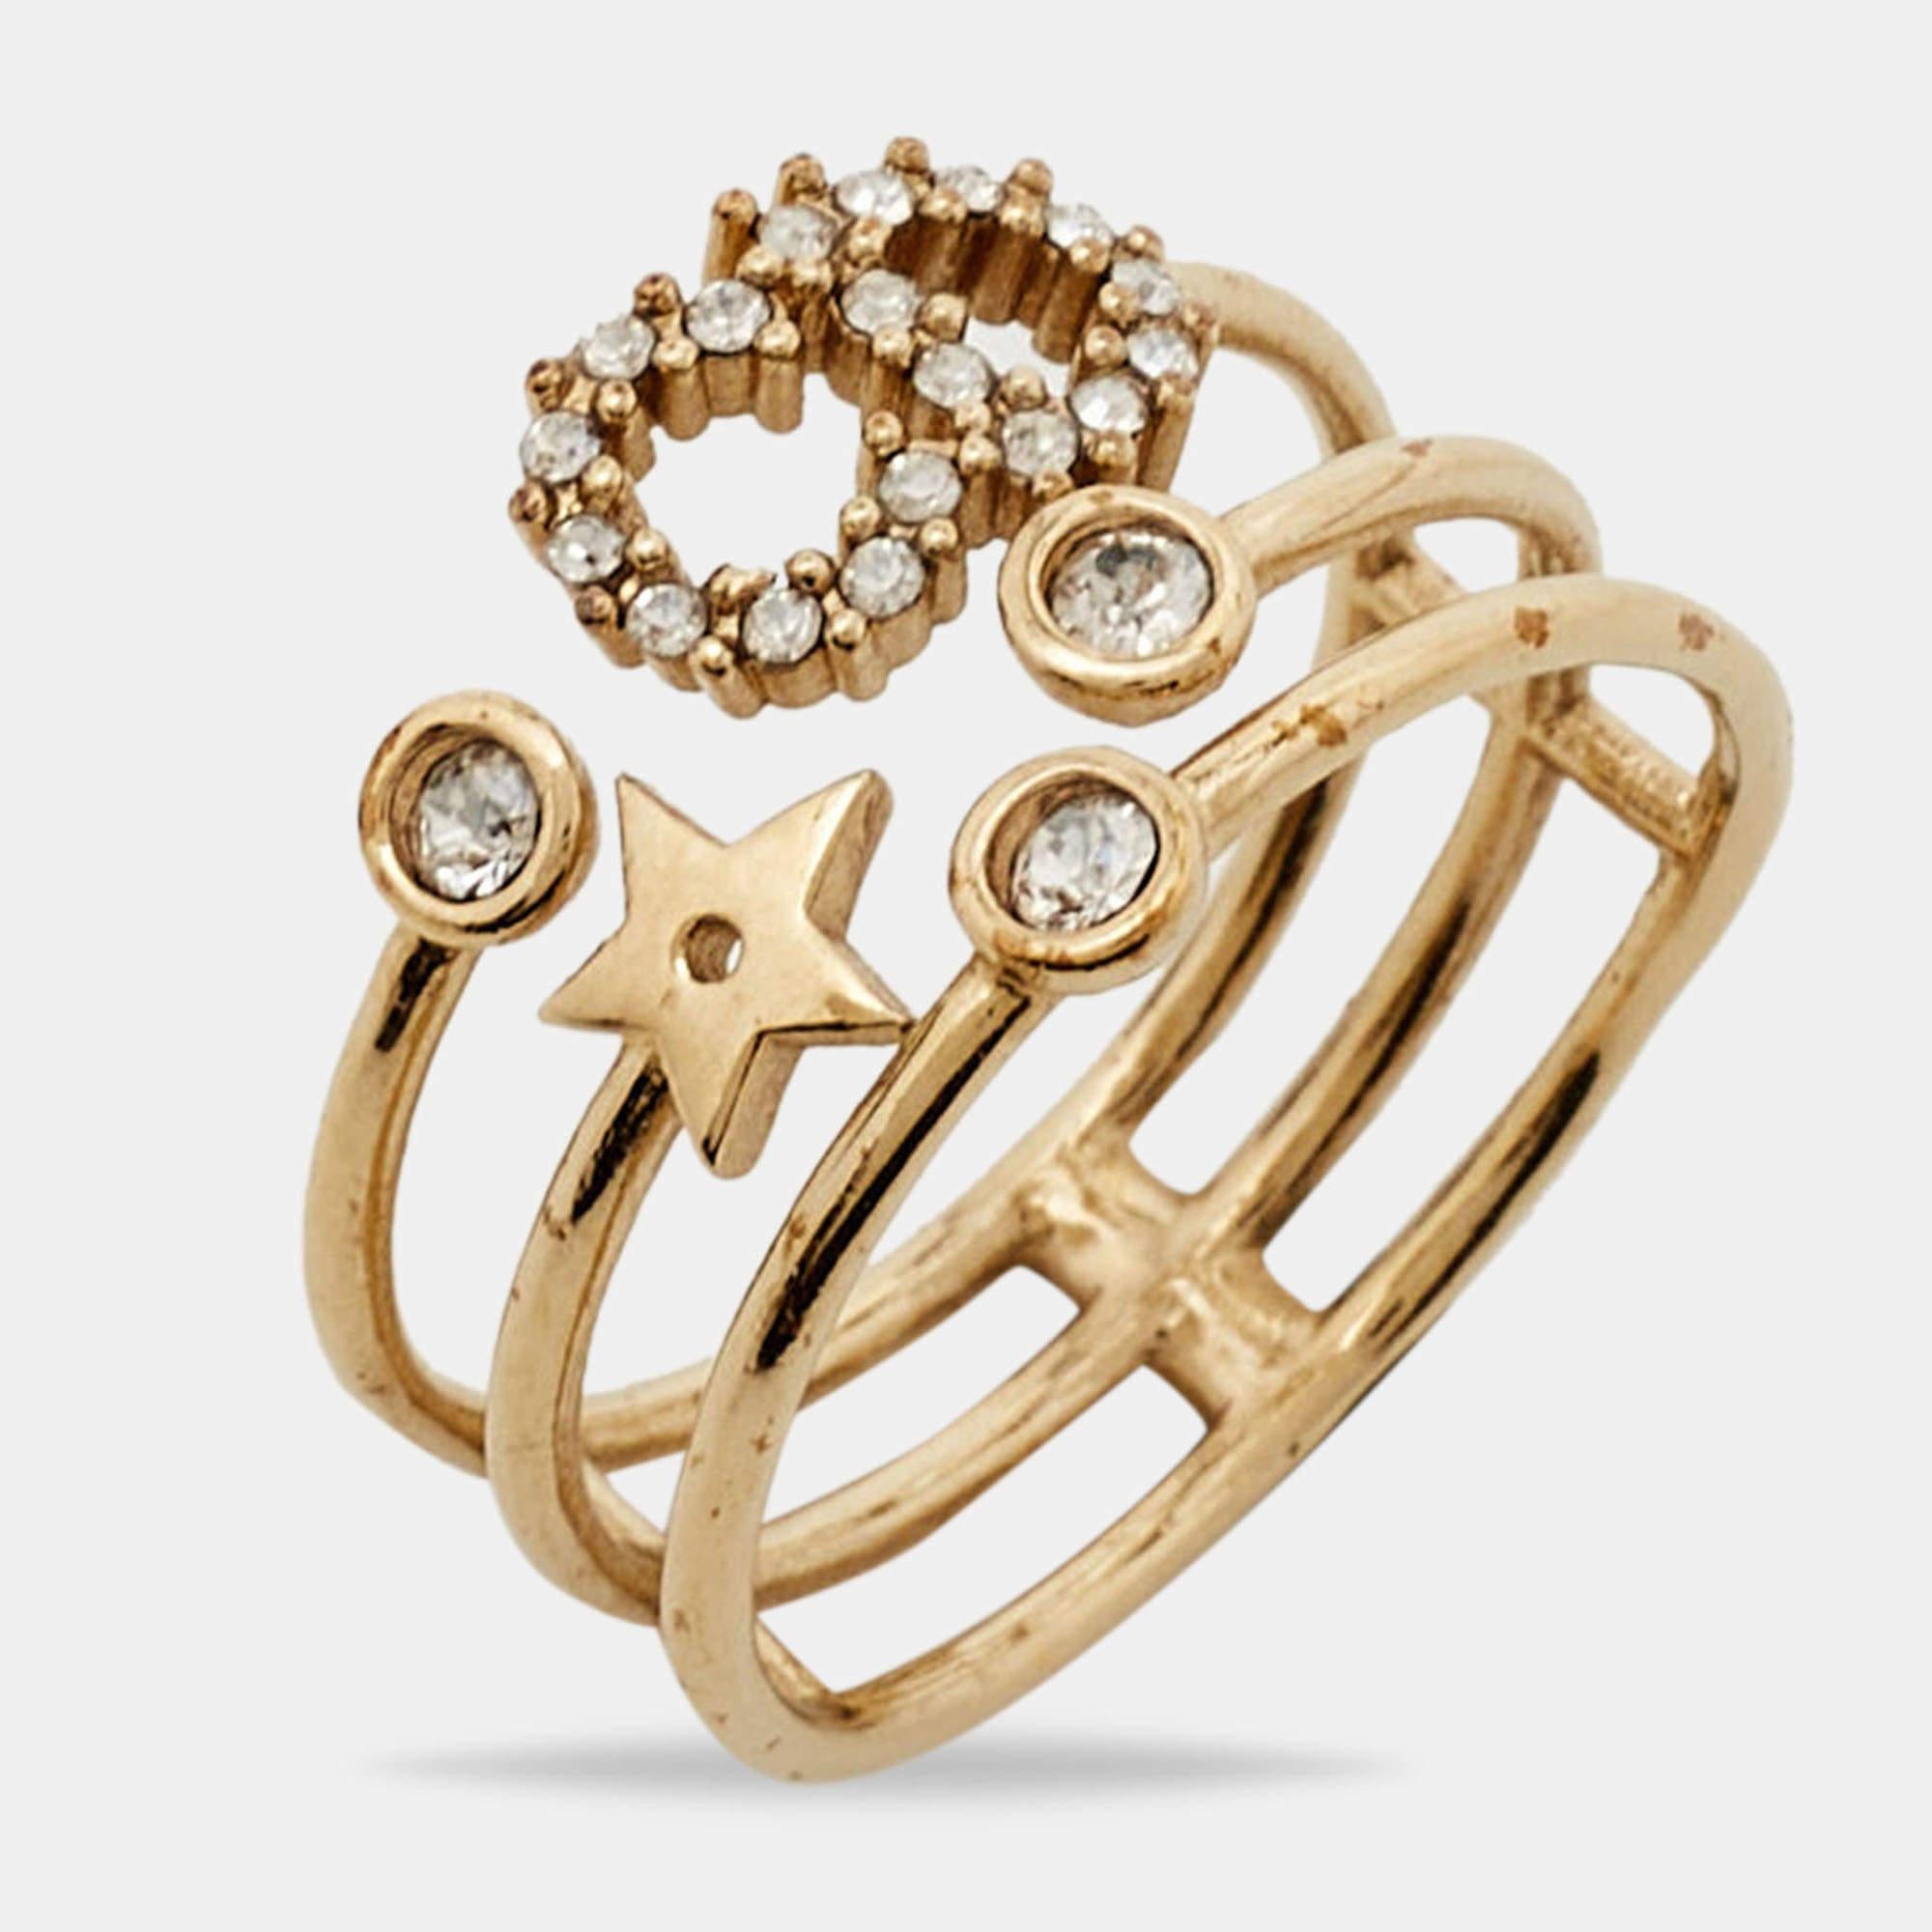 Um Ihre Finger auf die eleganteste Weise zu schmücken, präsentieren wir Ihnen diesen Ring von Dior. Er ist aus goldfarbenem Metall gefertigt und mit dem CD-Logo und Kristallen verziert.

Enthält: Original-Box, Info-Booklet, Original-Staubbeutel

